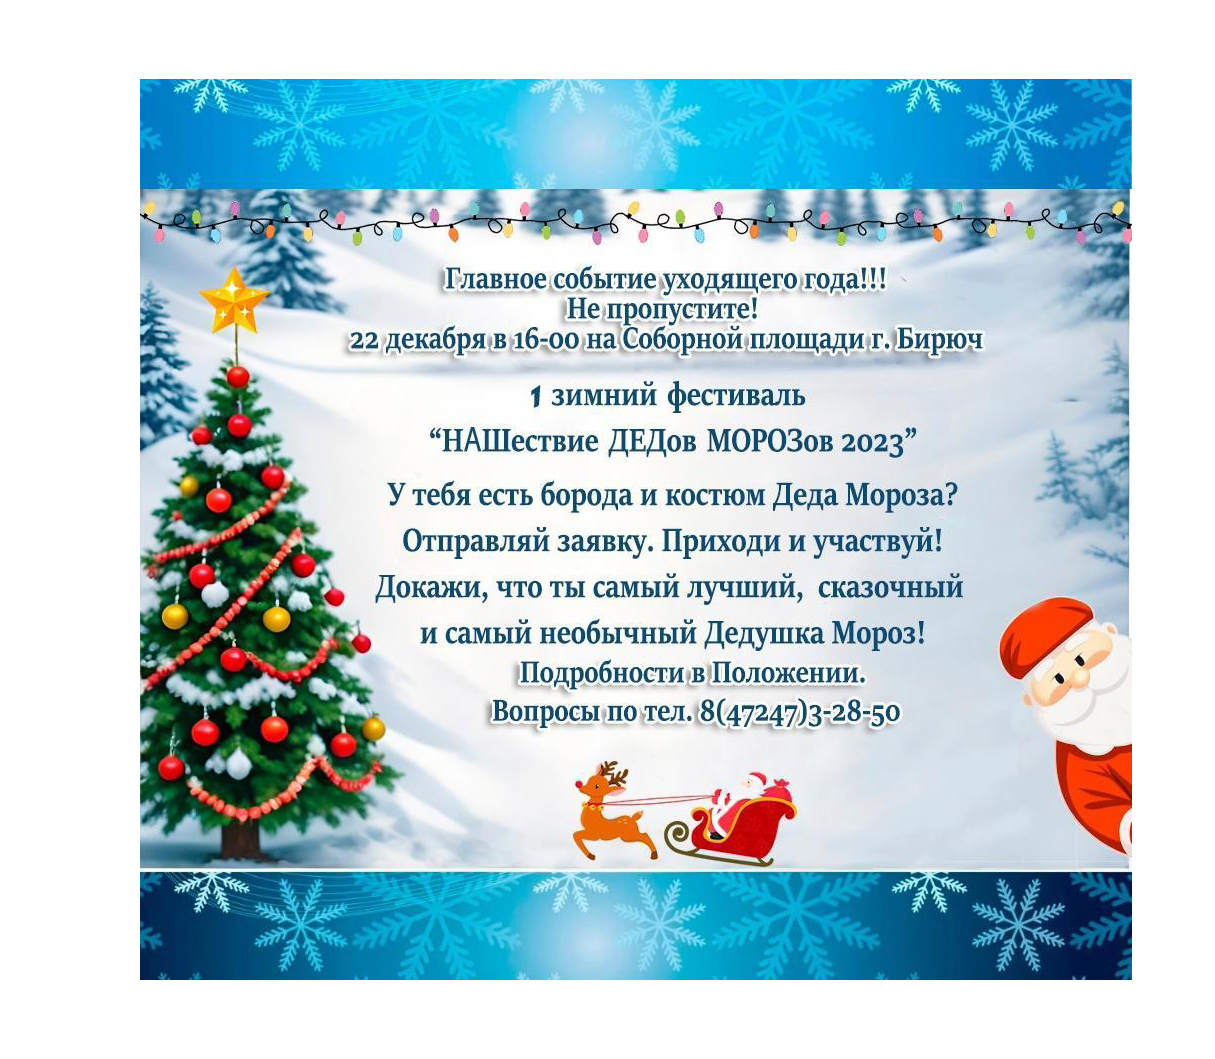 22 декабря на Соборной площади в Бирюче состоится нашествие Дедов Морозов!.